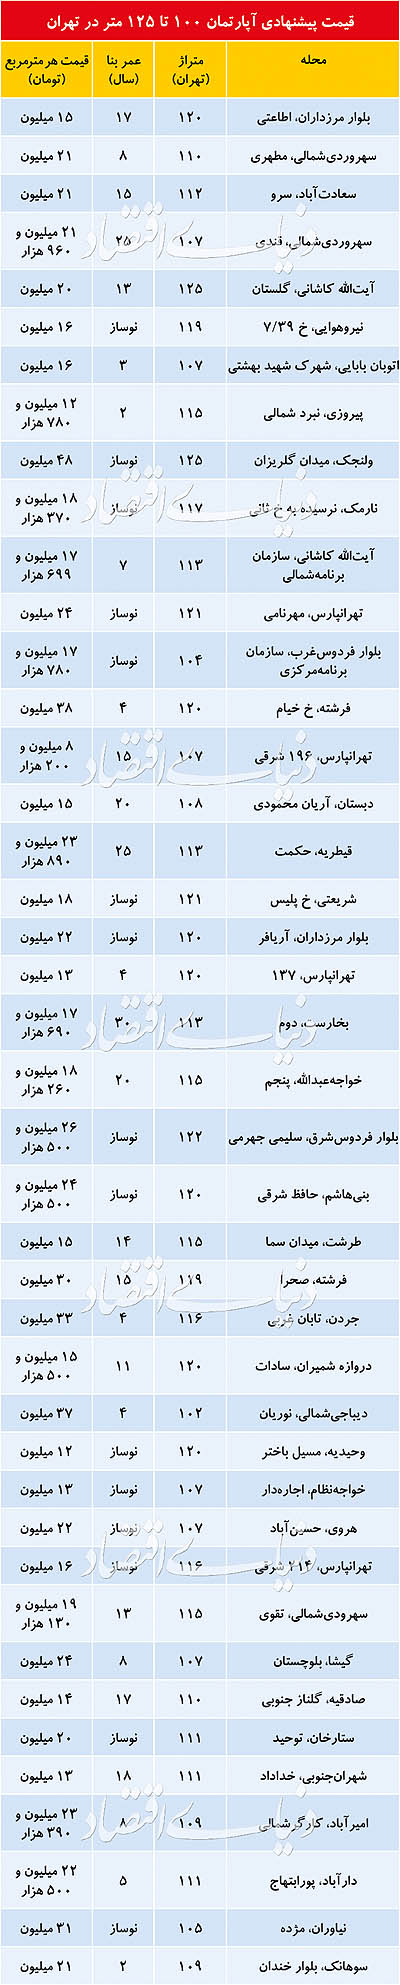 قیمت پیشنهادی آپارتمام های 100 تا 125 متری در تهران